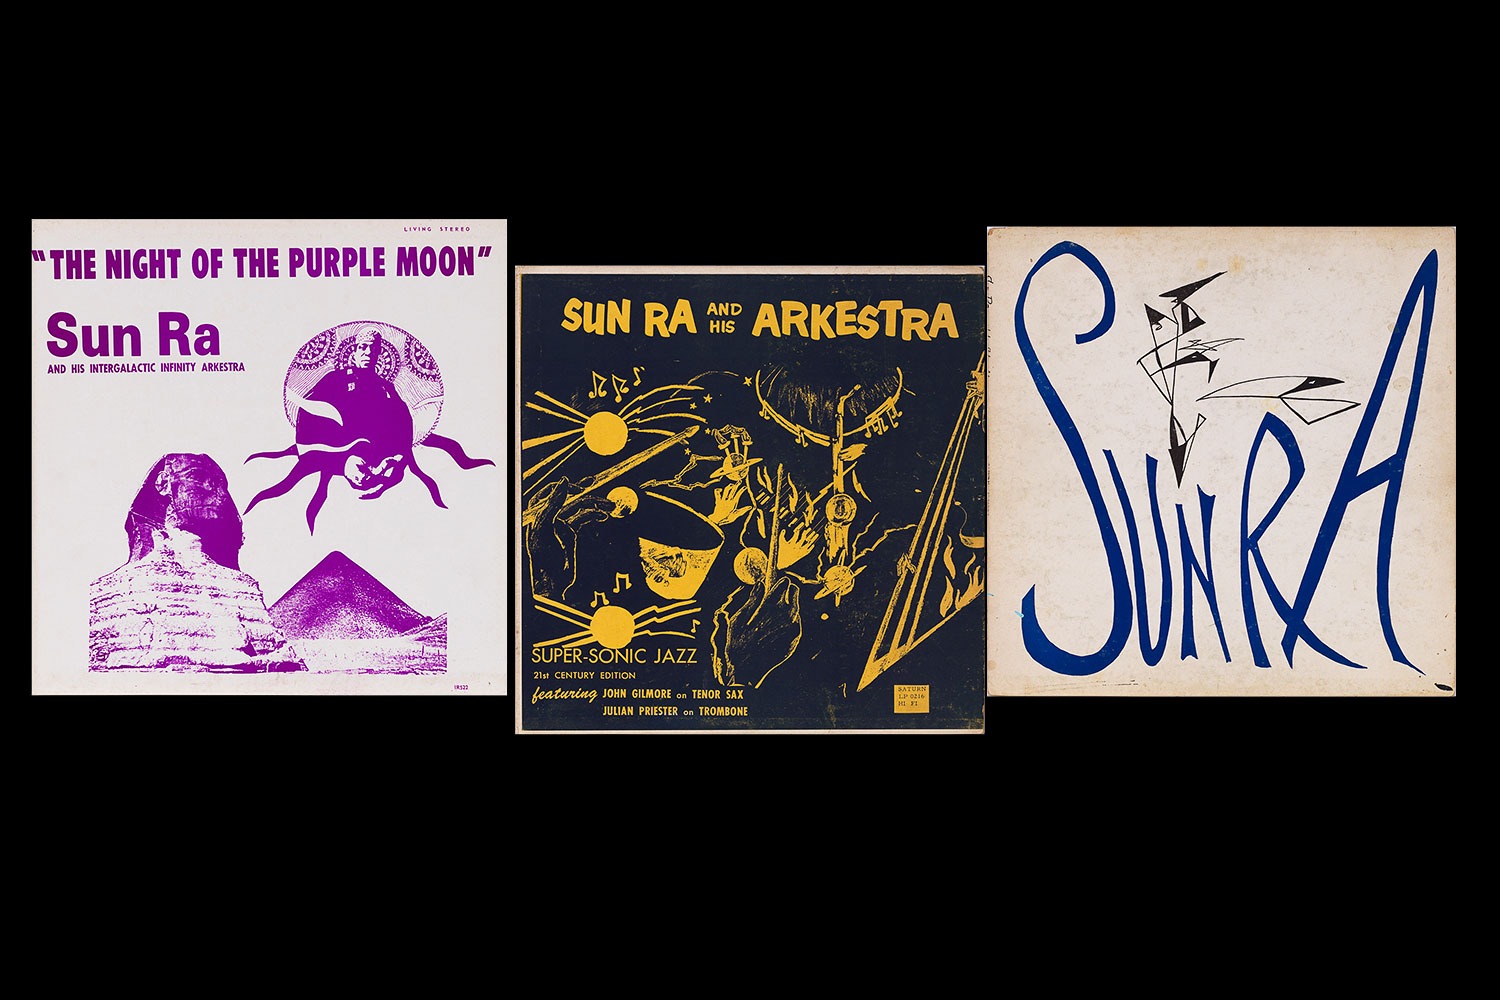 Sun Ra albums